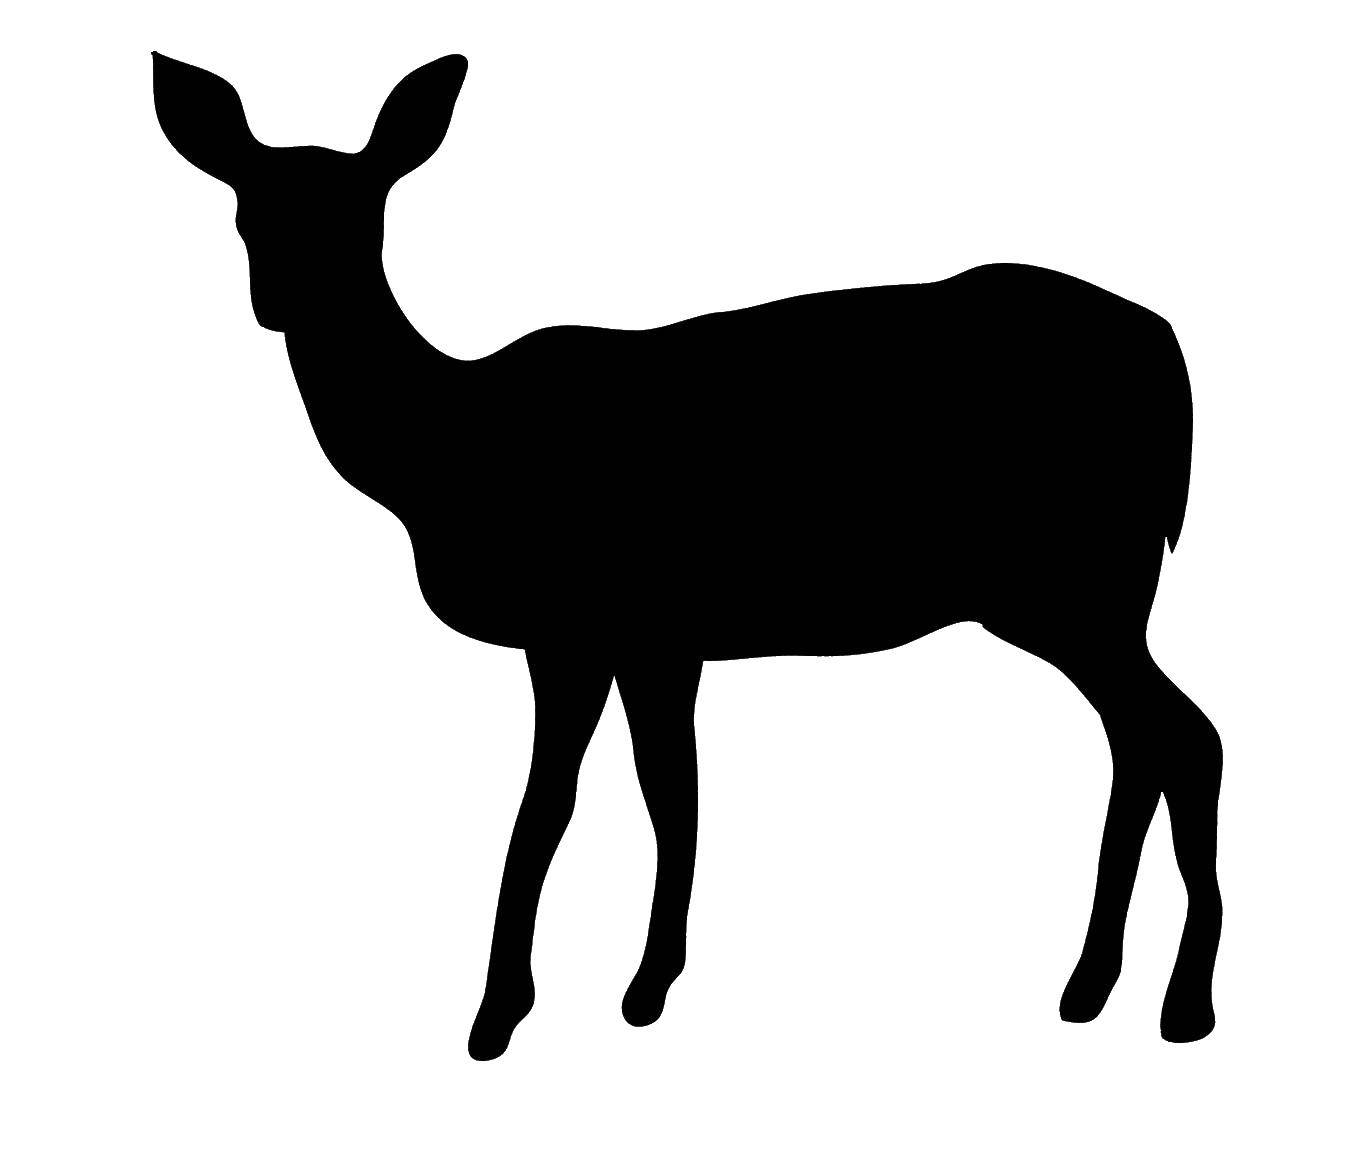 Название: Раскраска Контур олененка. Категория: Животные. Теги: животные, контур, олень.